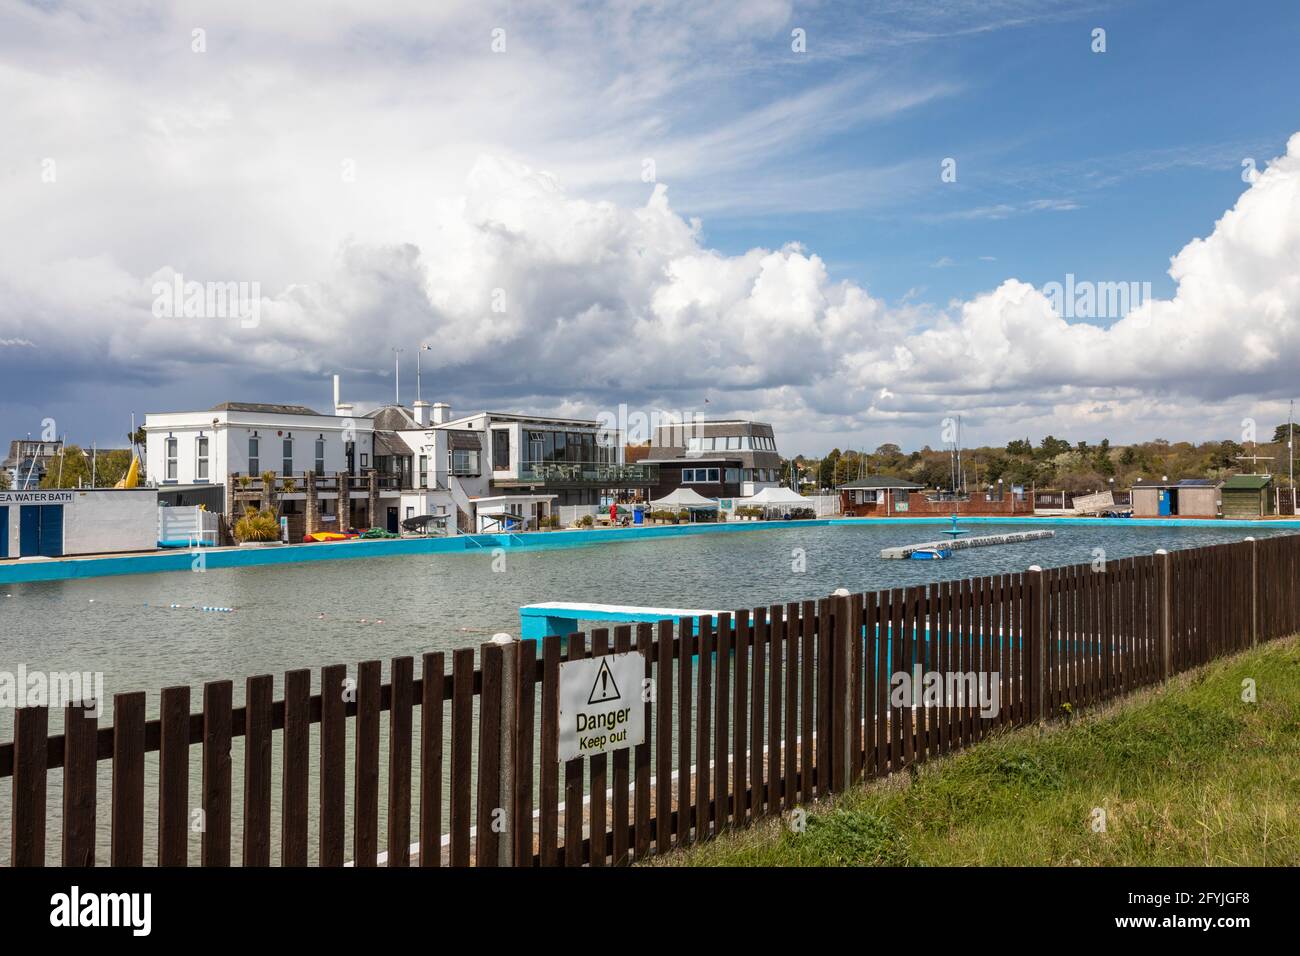 Lymington Sea Water Bäder. Der älteste natürliche Freiluft-Swimmingpool in Großbritannien. Lymington, Hampshire, England, Großbritannien Stockfoto